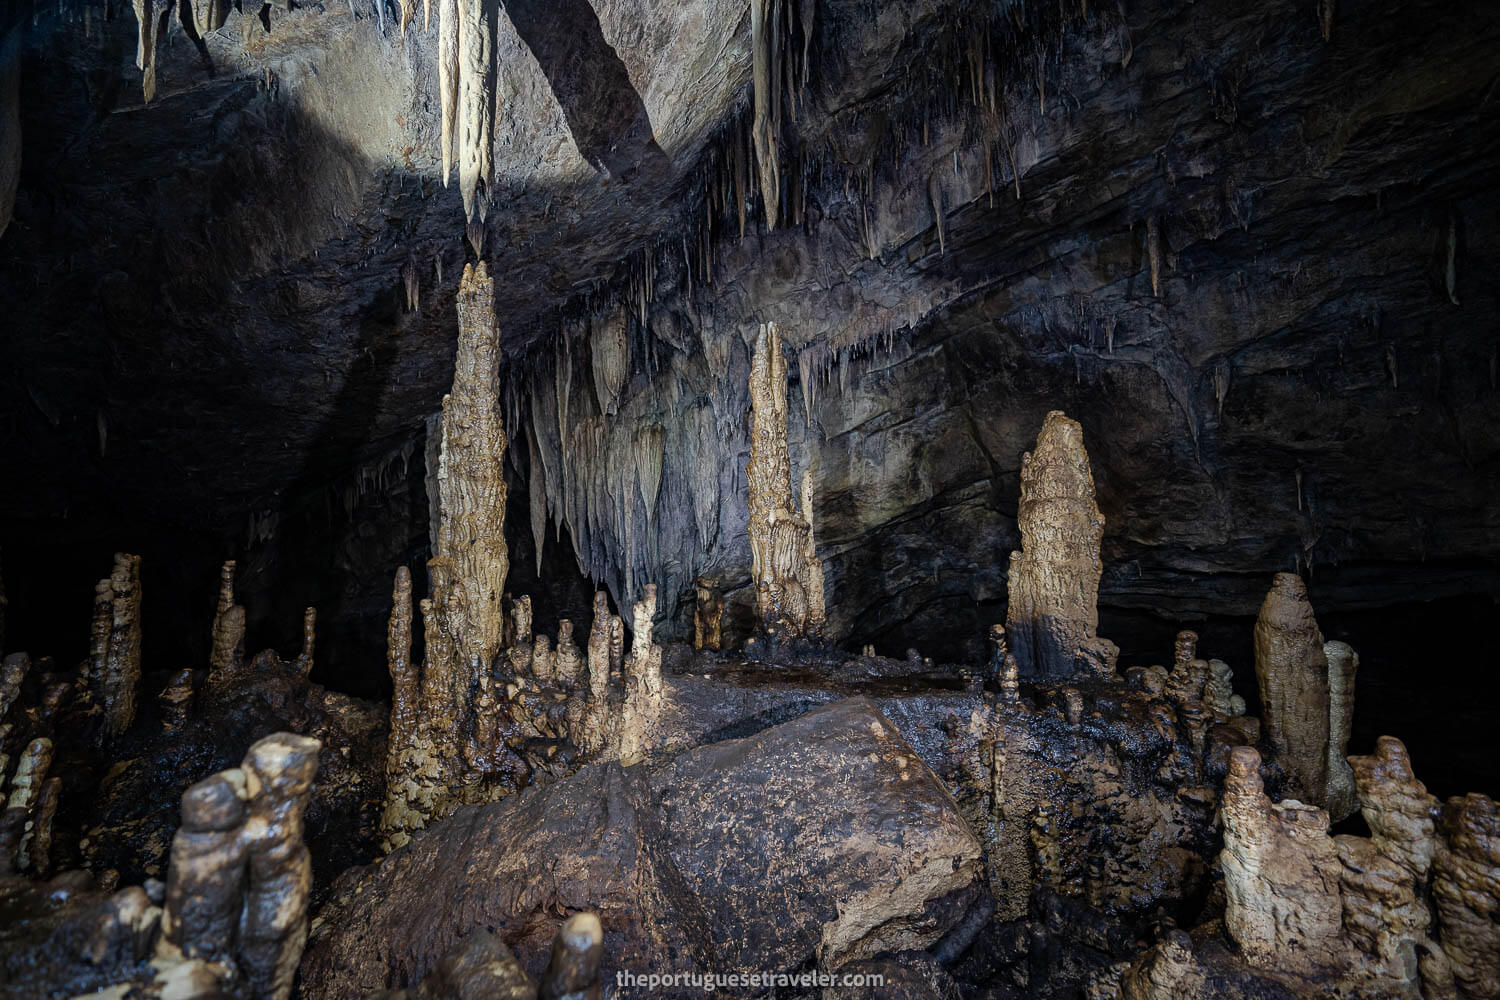 El Cementerio, the graveyard of the Tayos Caves, on the Cueva de Los Tayos expedition.